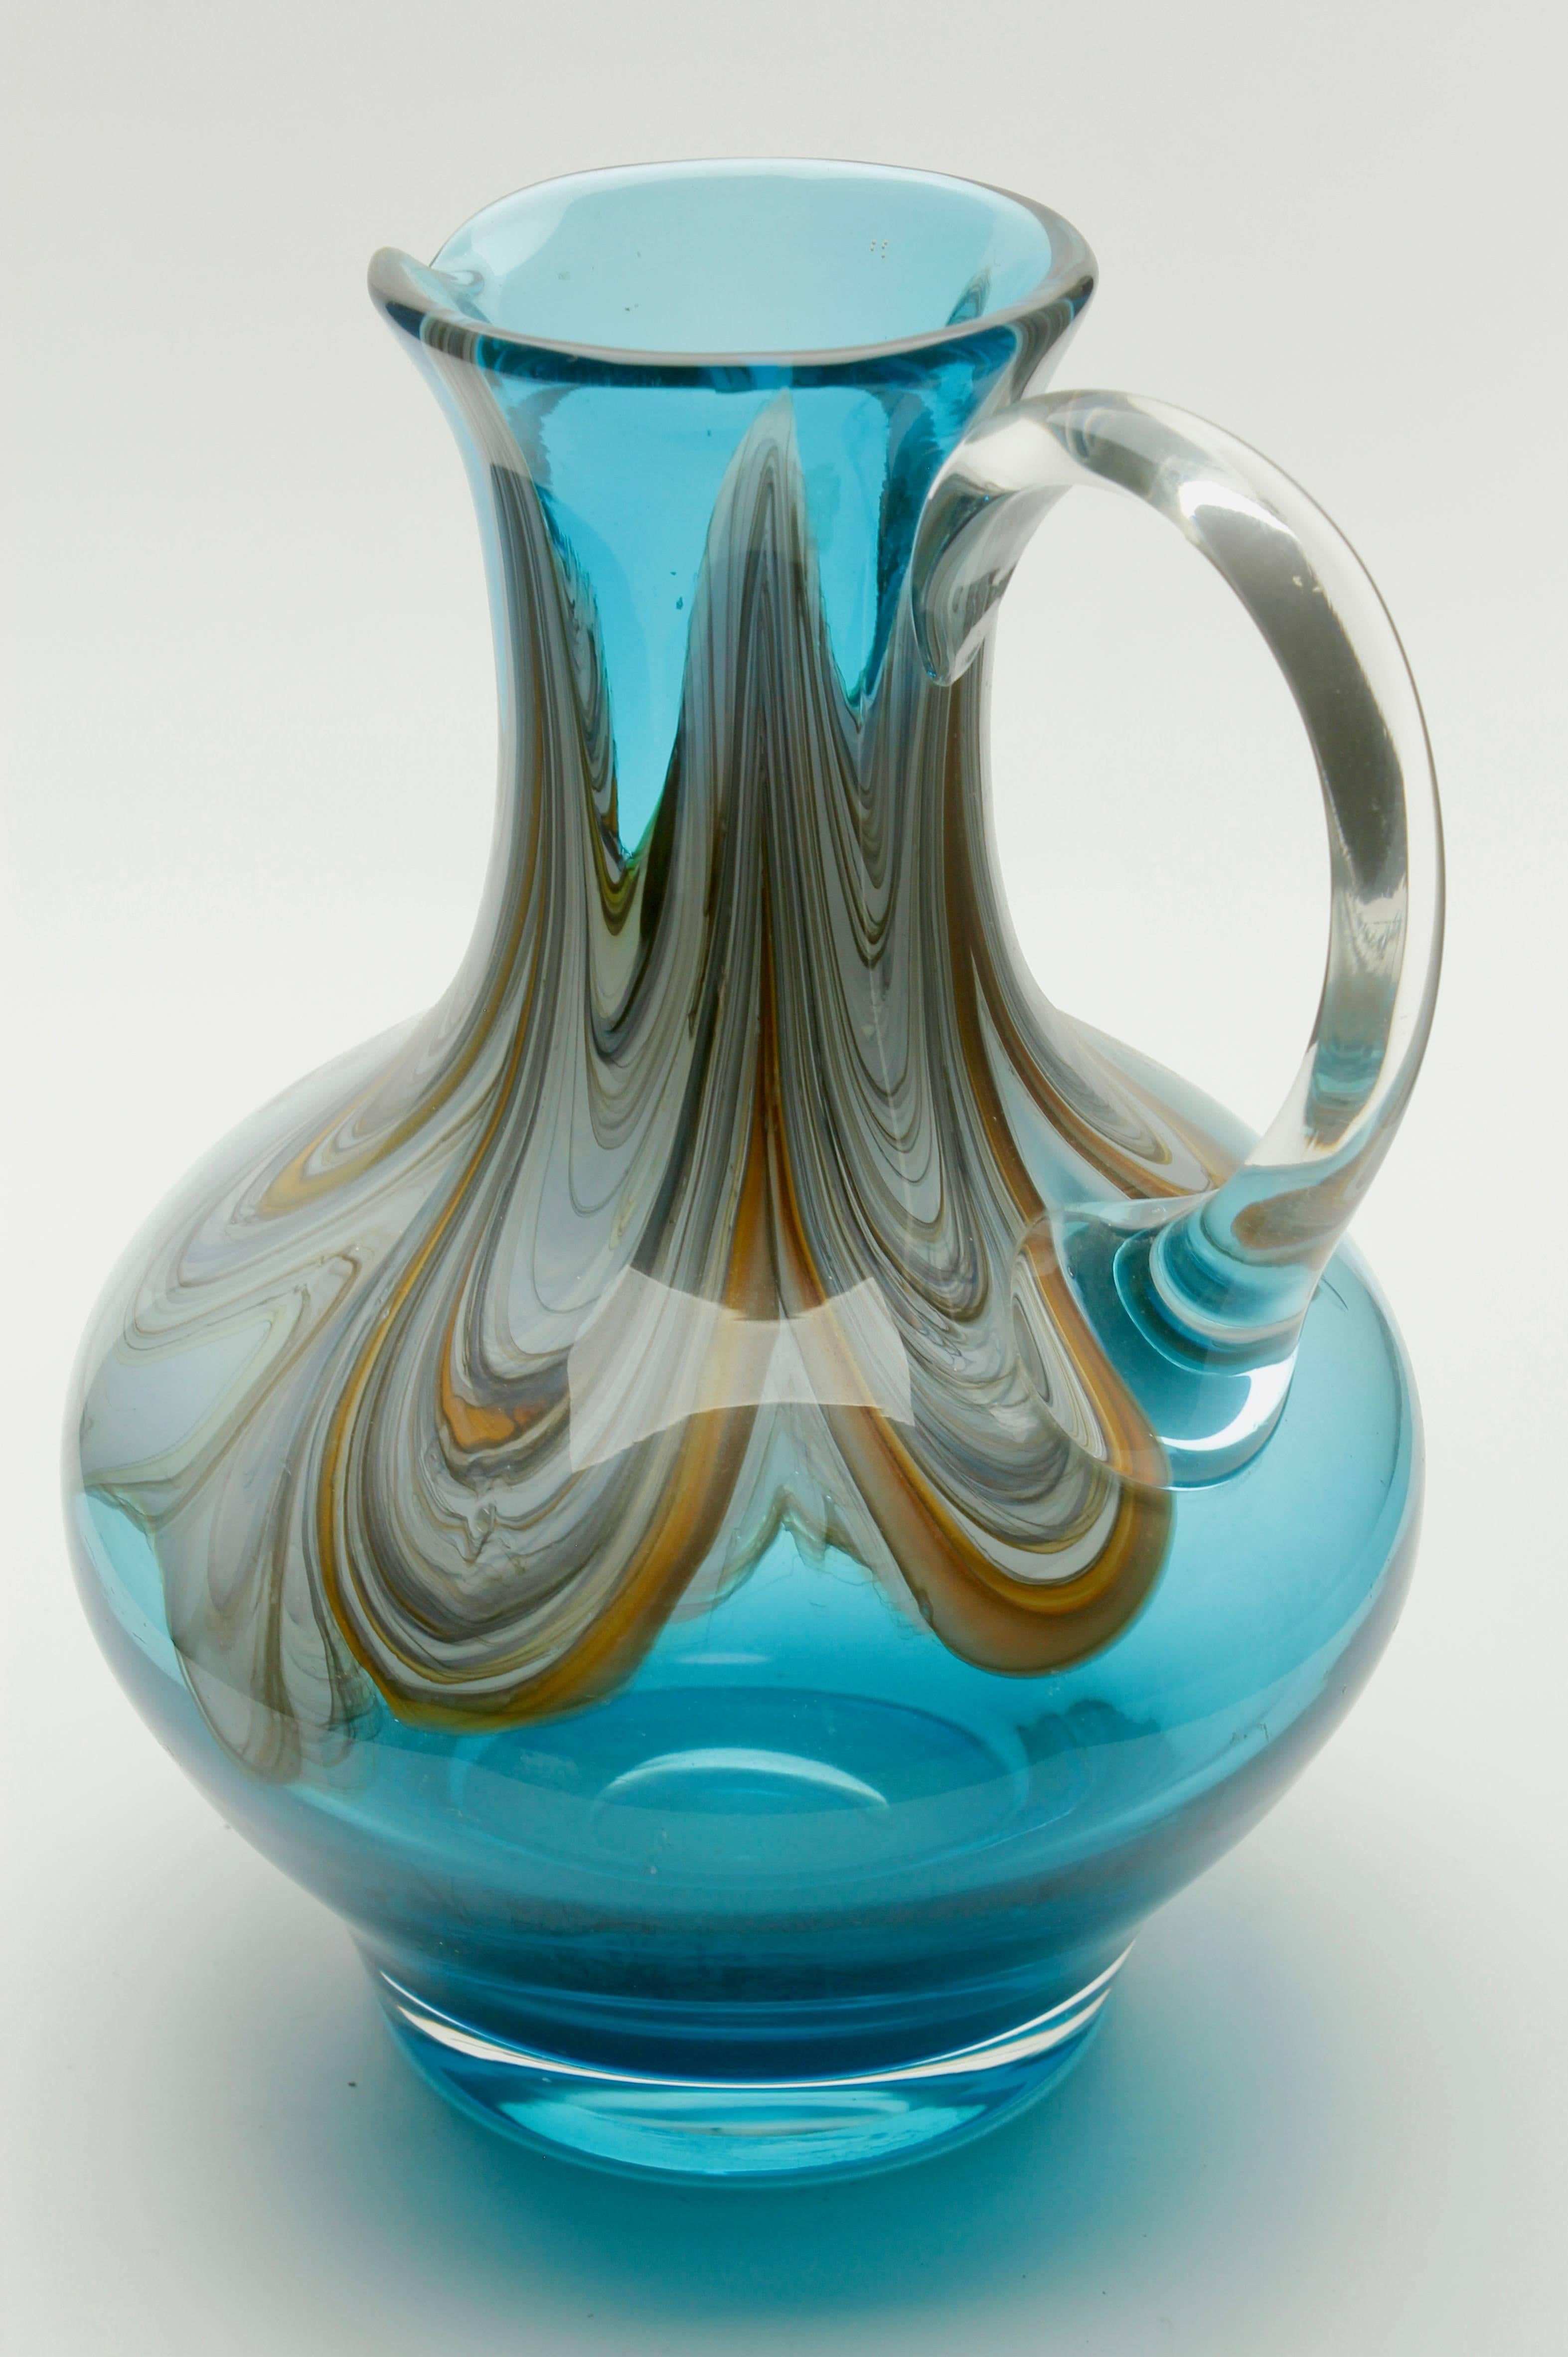 Schöner mundgeblasener Kunstglaskrug mit achatfarbenen Wirbeln.
Eine fantastische Mischung aus modernem und klassischem Design. Ausgezeichneter Zustand!

Dies ist eine seltene Farbe und Größe, ein Must-Have für jeden Sammler.
Sieht einfach